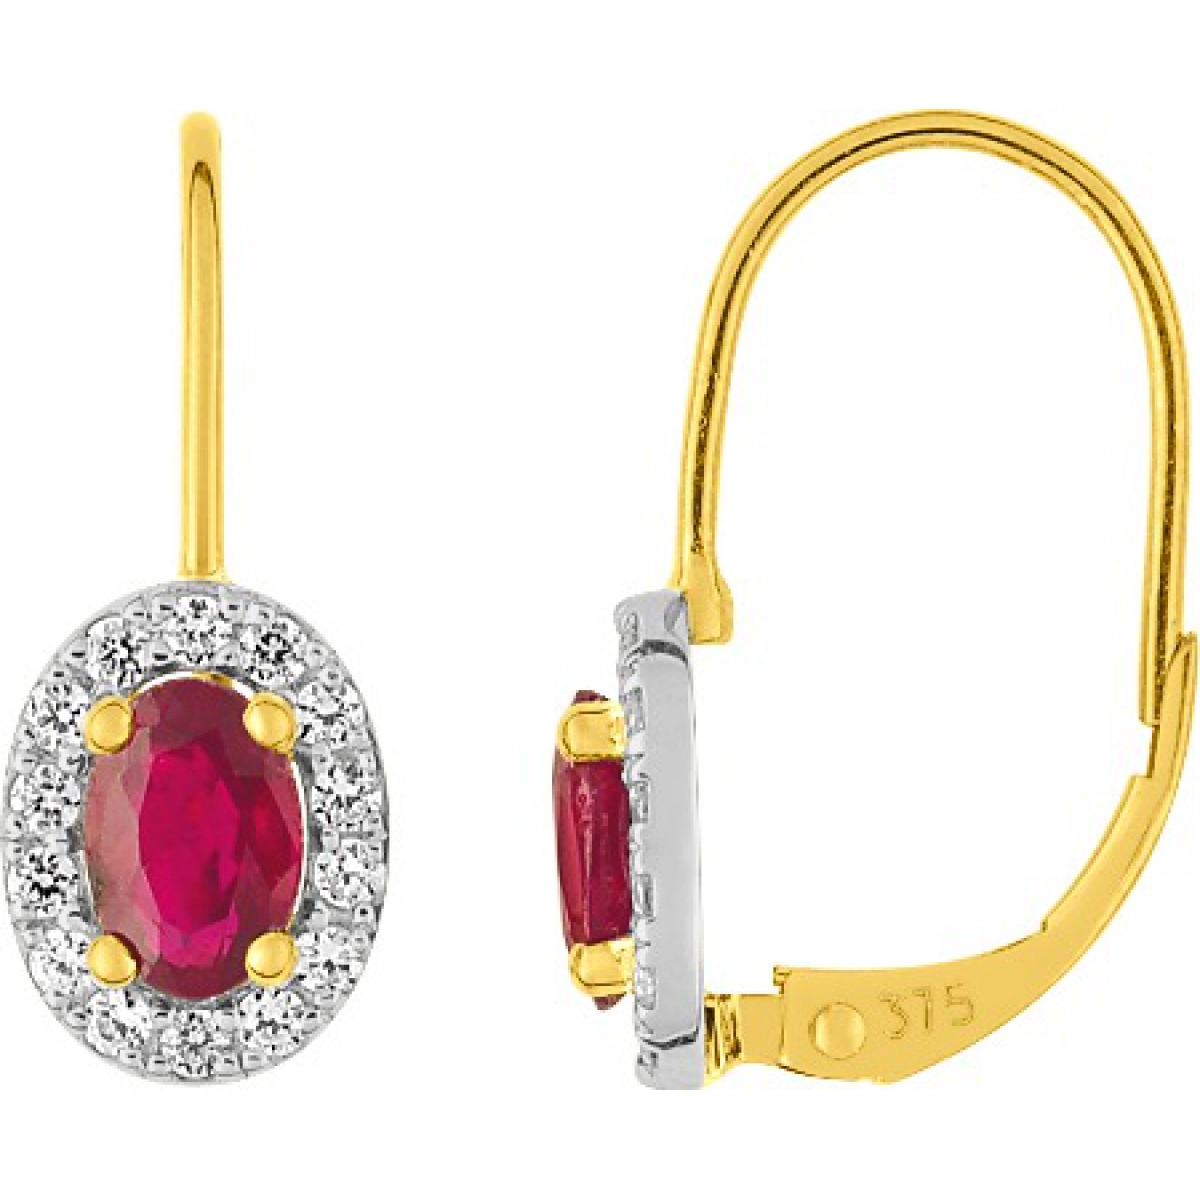 Earrings pair with ruby + cz 9K 2TG  Lua Blanca  3PZ84BRTZ.0